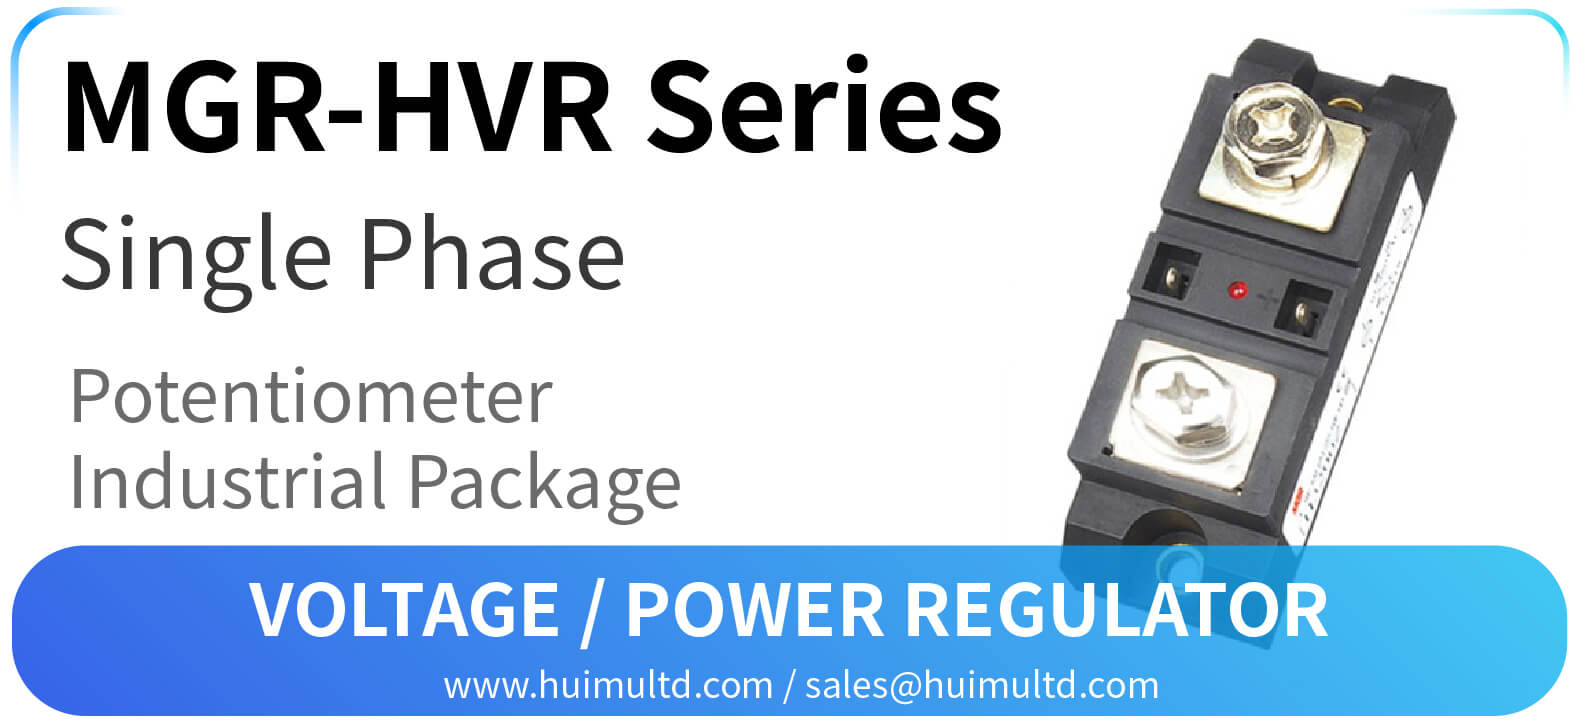 MGR-HVR Series Voltage Power Regulator